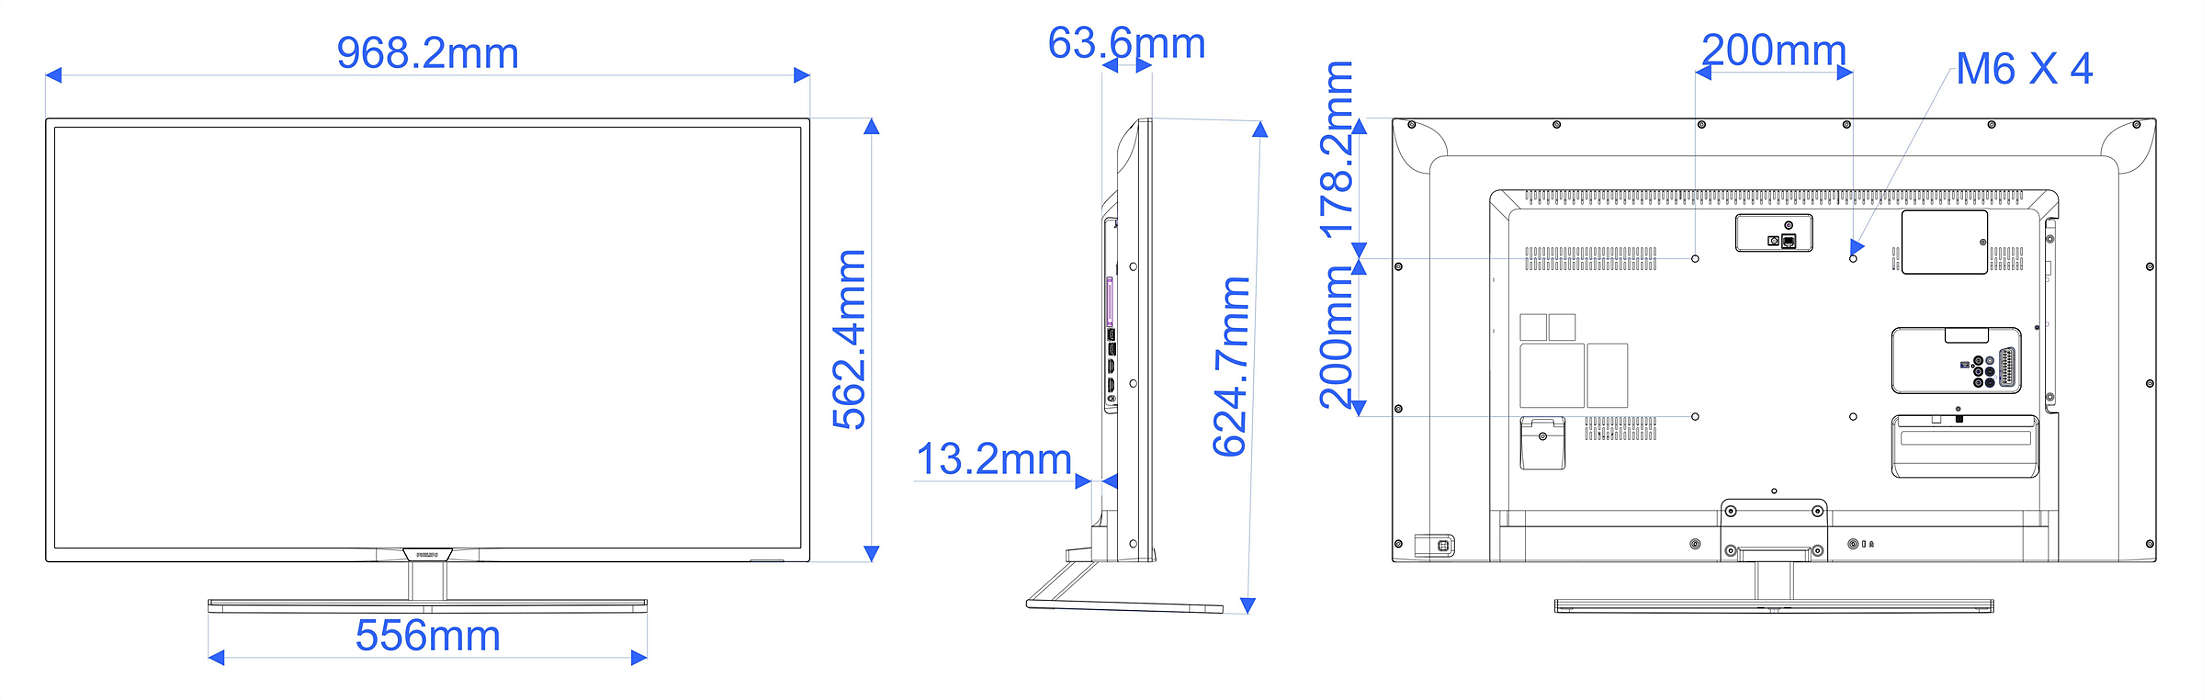 Как измеряется диагональ телевизора в сантиметрах фото экрана